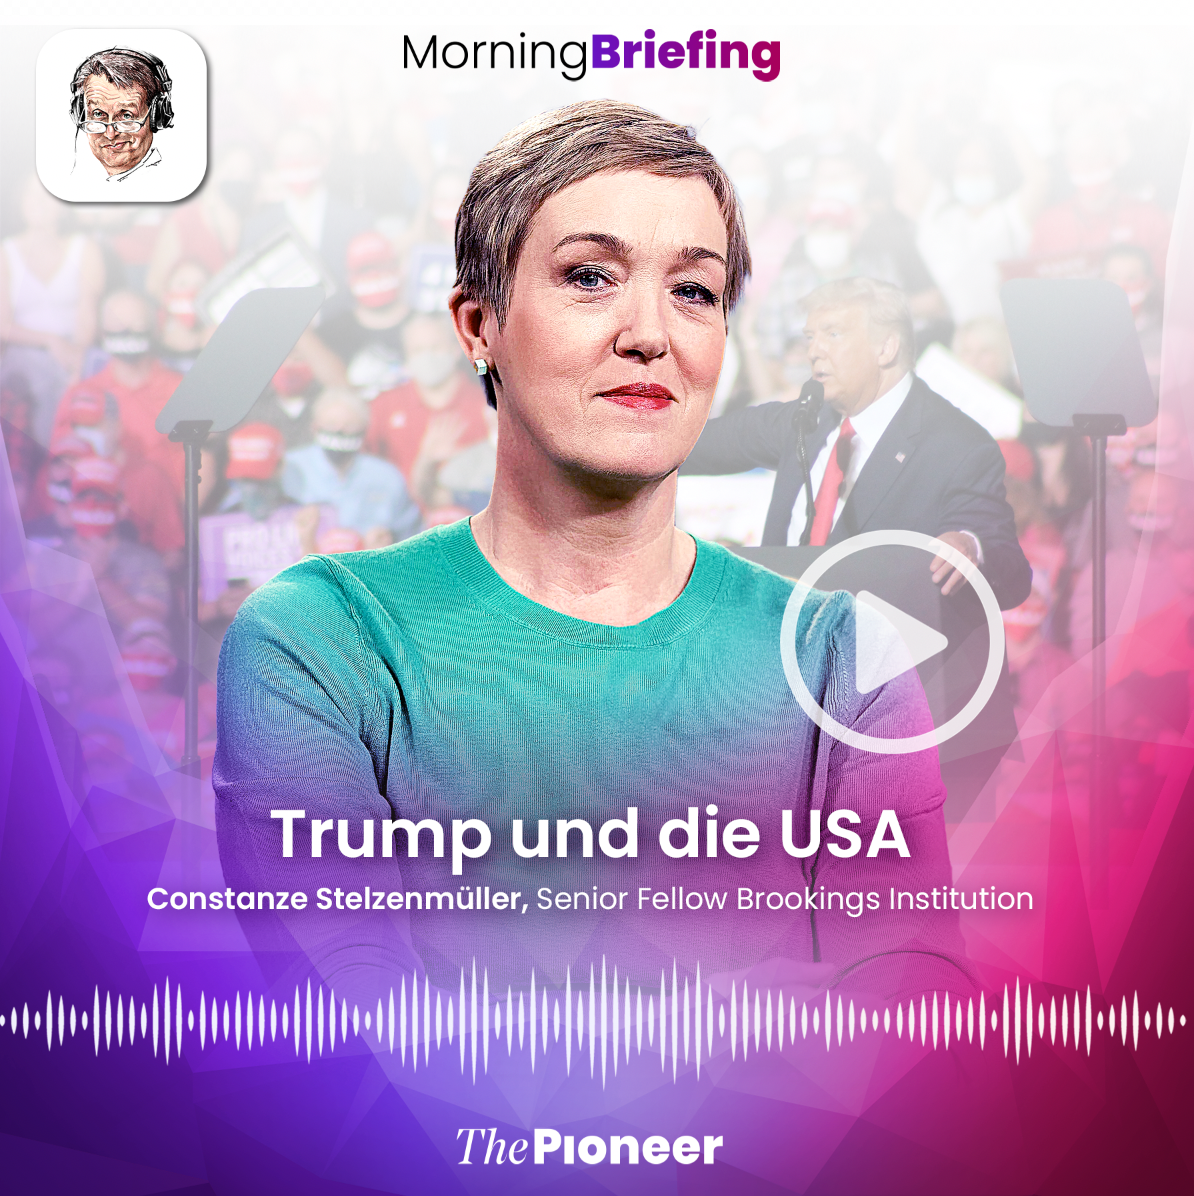 20201106-image-media pioneer-morning briefing-Kachel Stelzenmüller